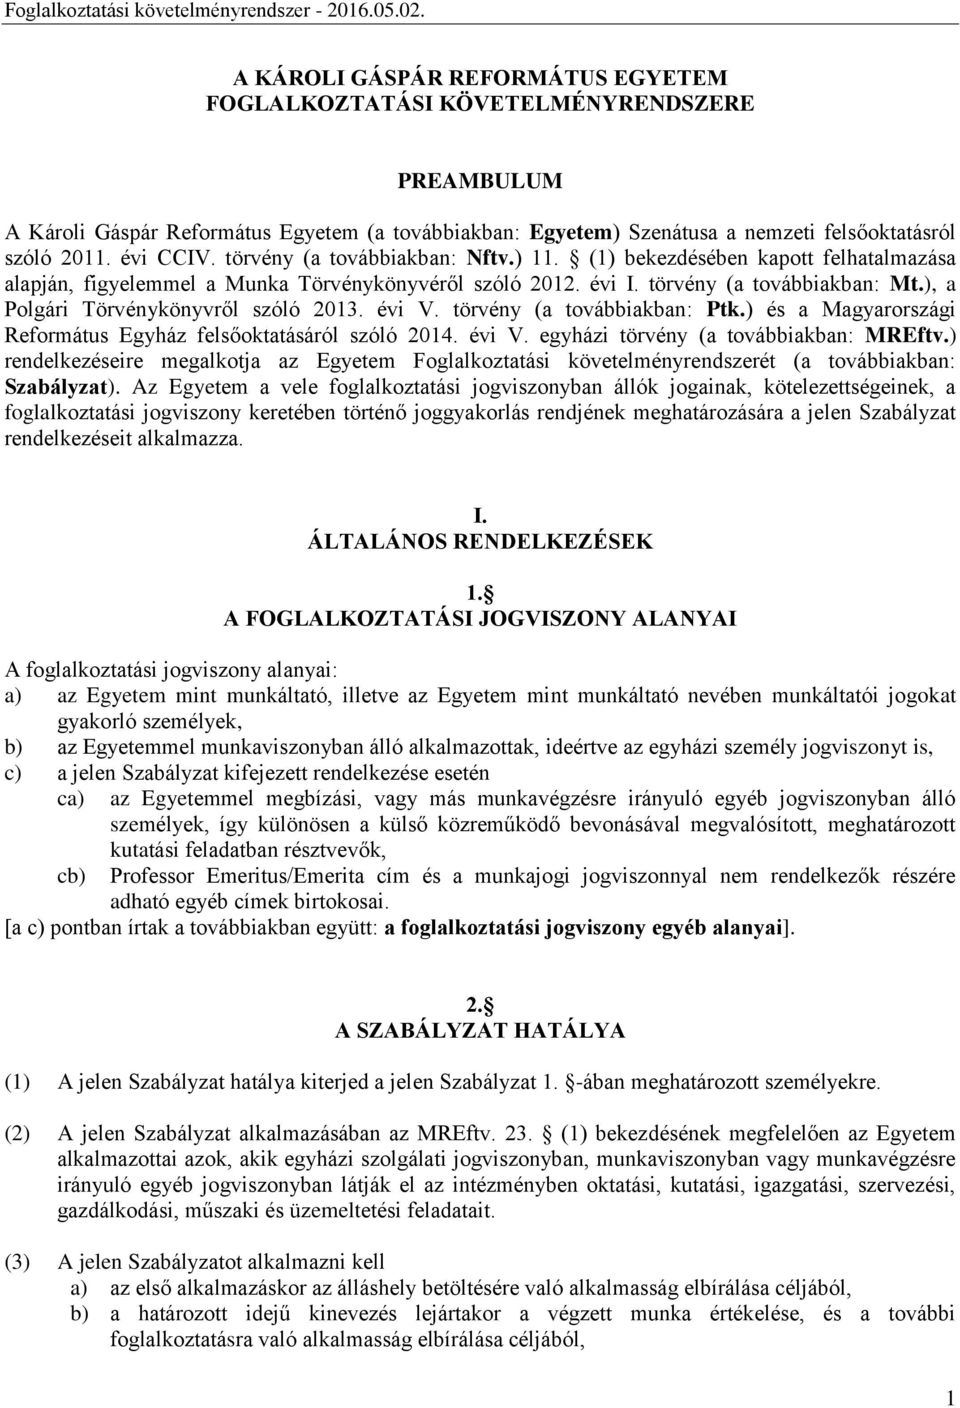 ), a Polgári Törvénykönyvről szóló 2013. évi V. törvény (a továbbiakban: Ptk.) és a Magyarországi Református Egyház felsőoktatásáról szóló 2014. évi V. egyházi törvény (a továbbiakban: MREftv.